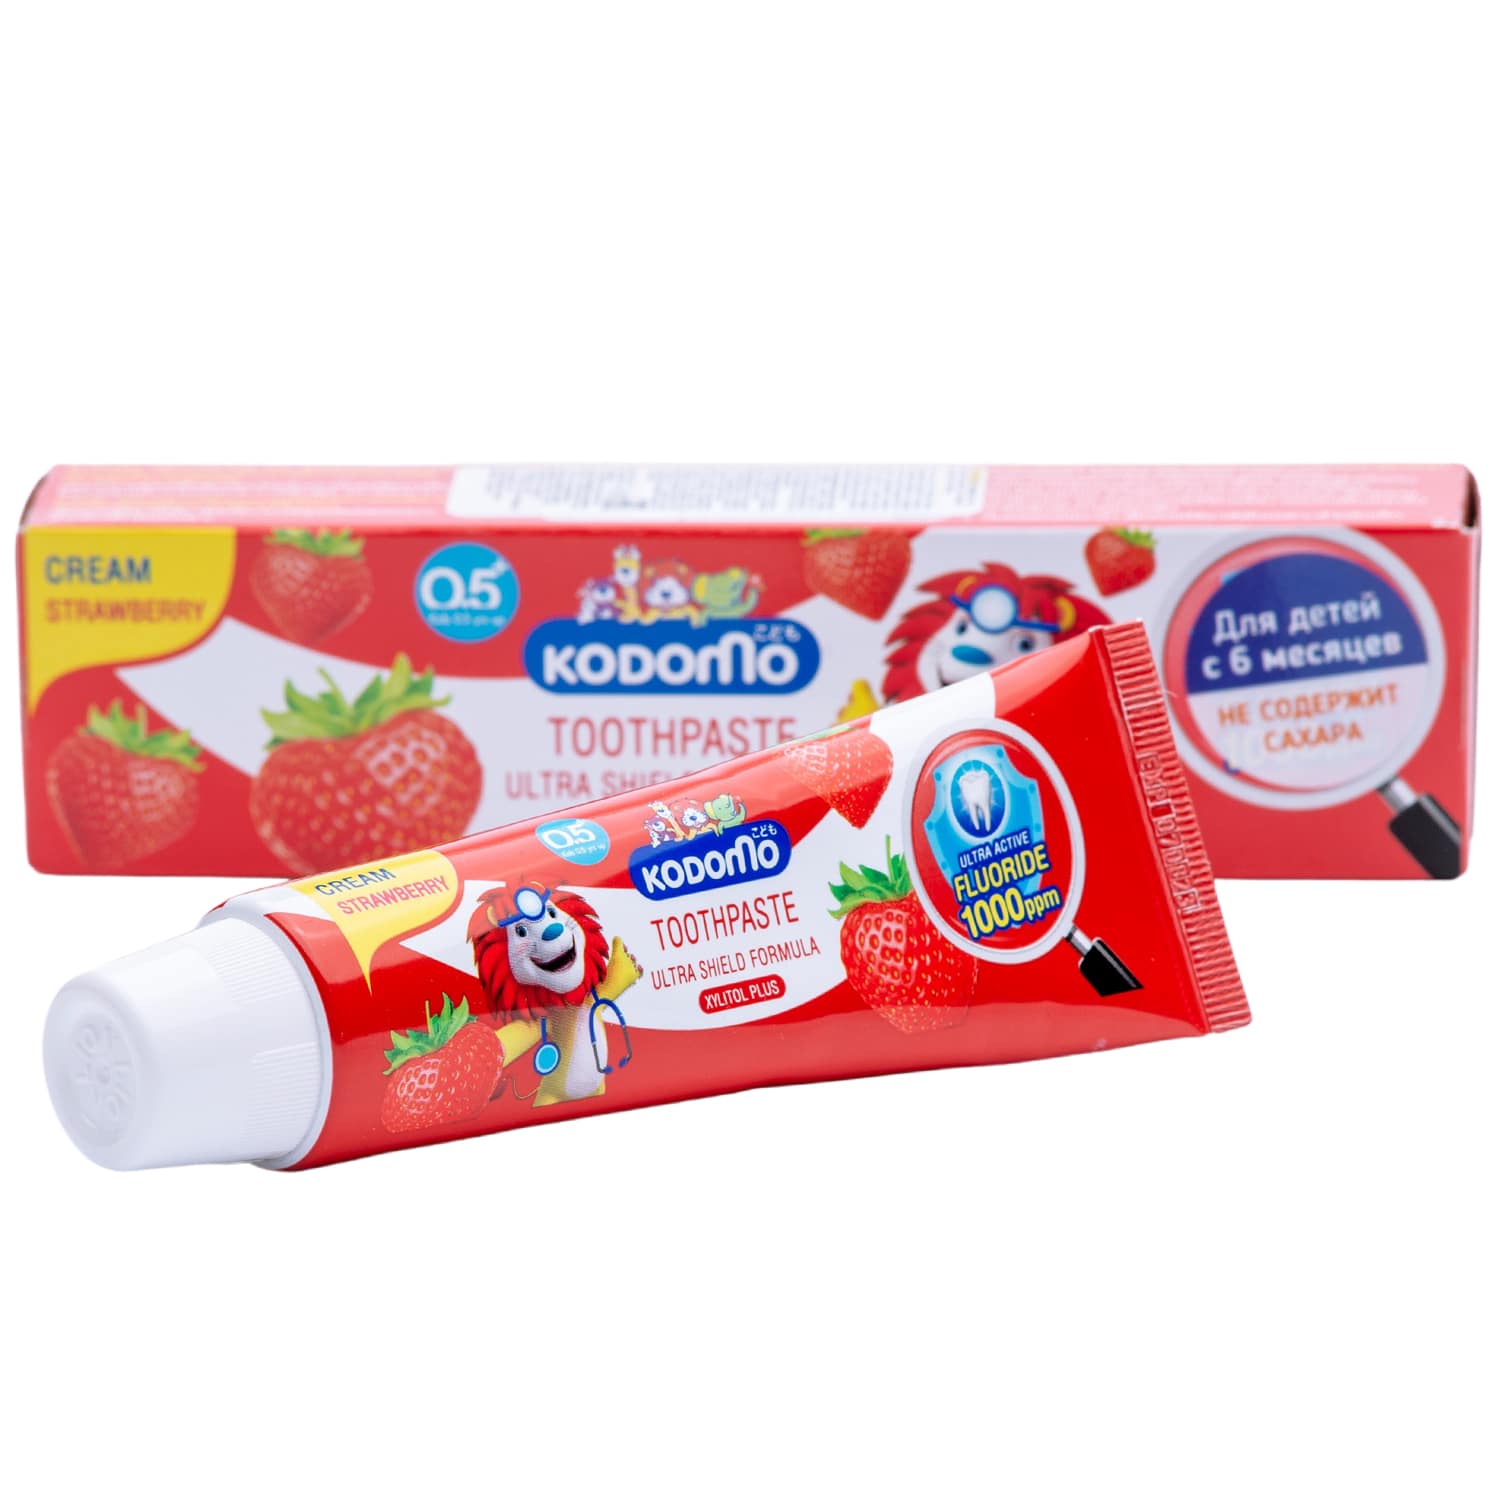 цена Lion Thailand Зубная паста для детей с 6 месяцев с ароматом клубники, 65 г (Lion Thailand, Kodomo)